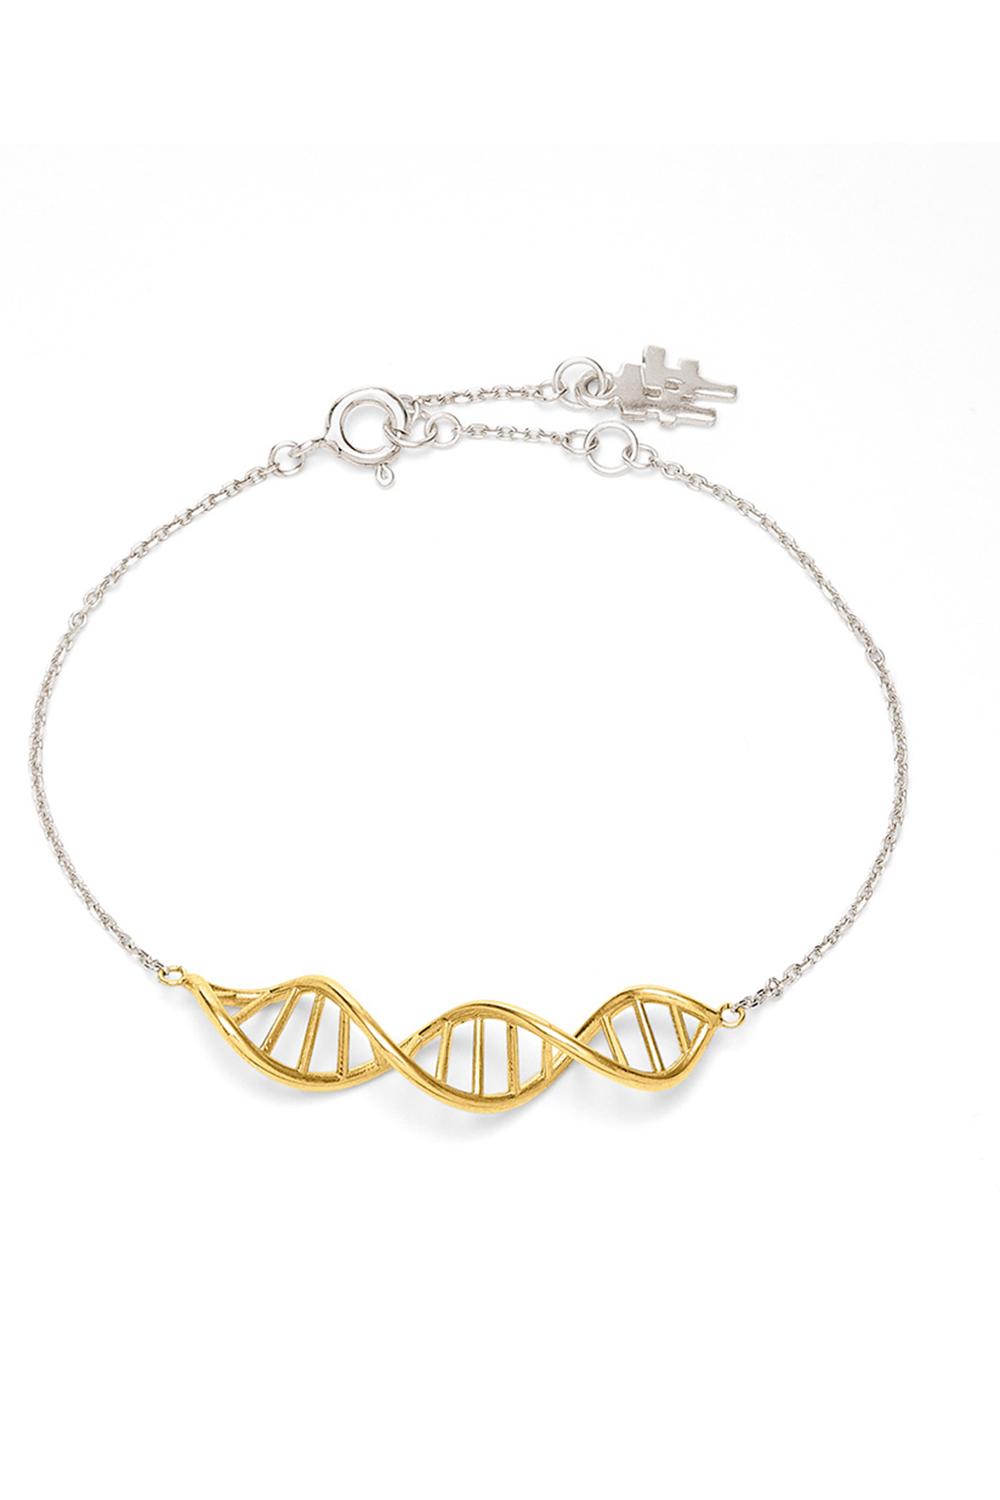 FOLLI FOLLIE – Γυναικειο ασημενιο βραχιολι FOLLI FOLLIE STYLE DNA